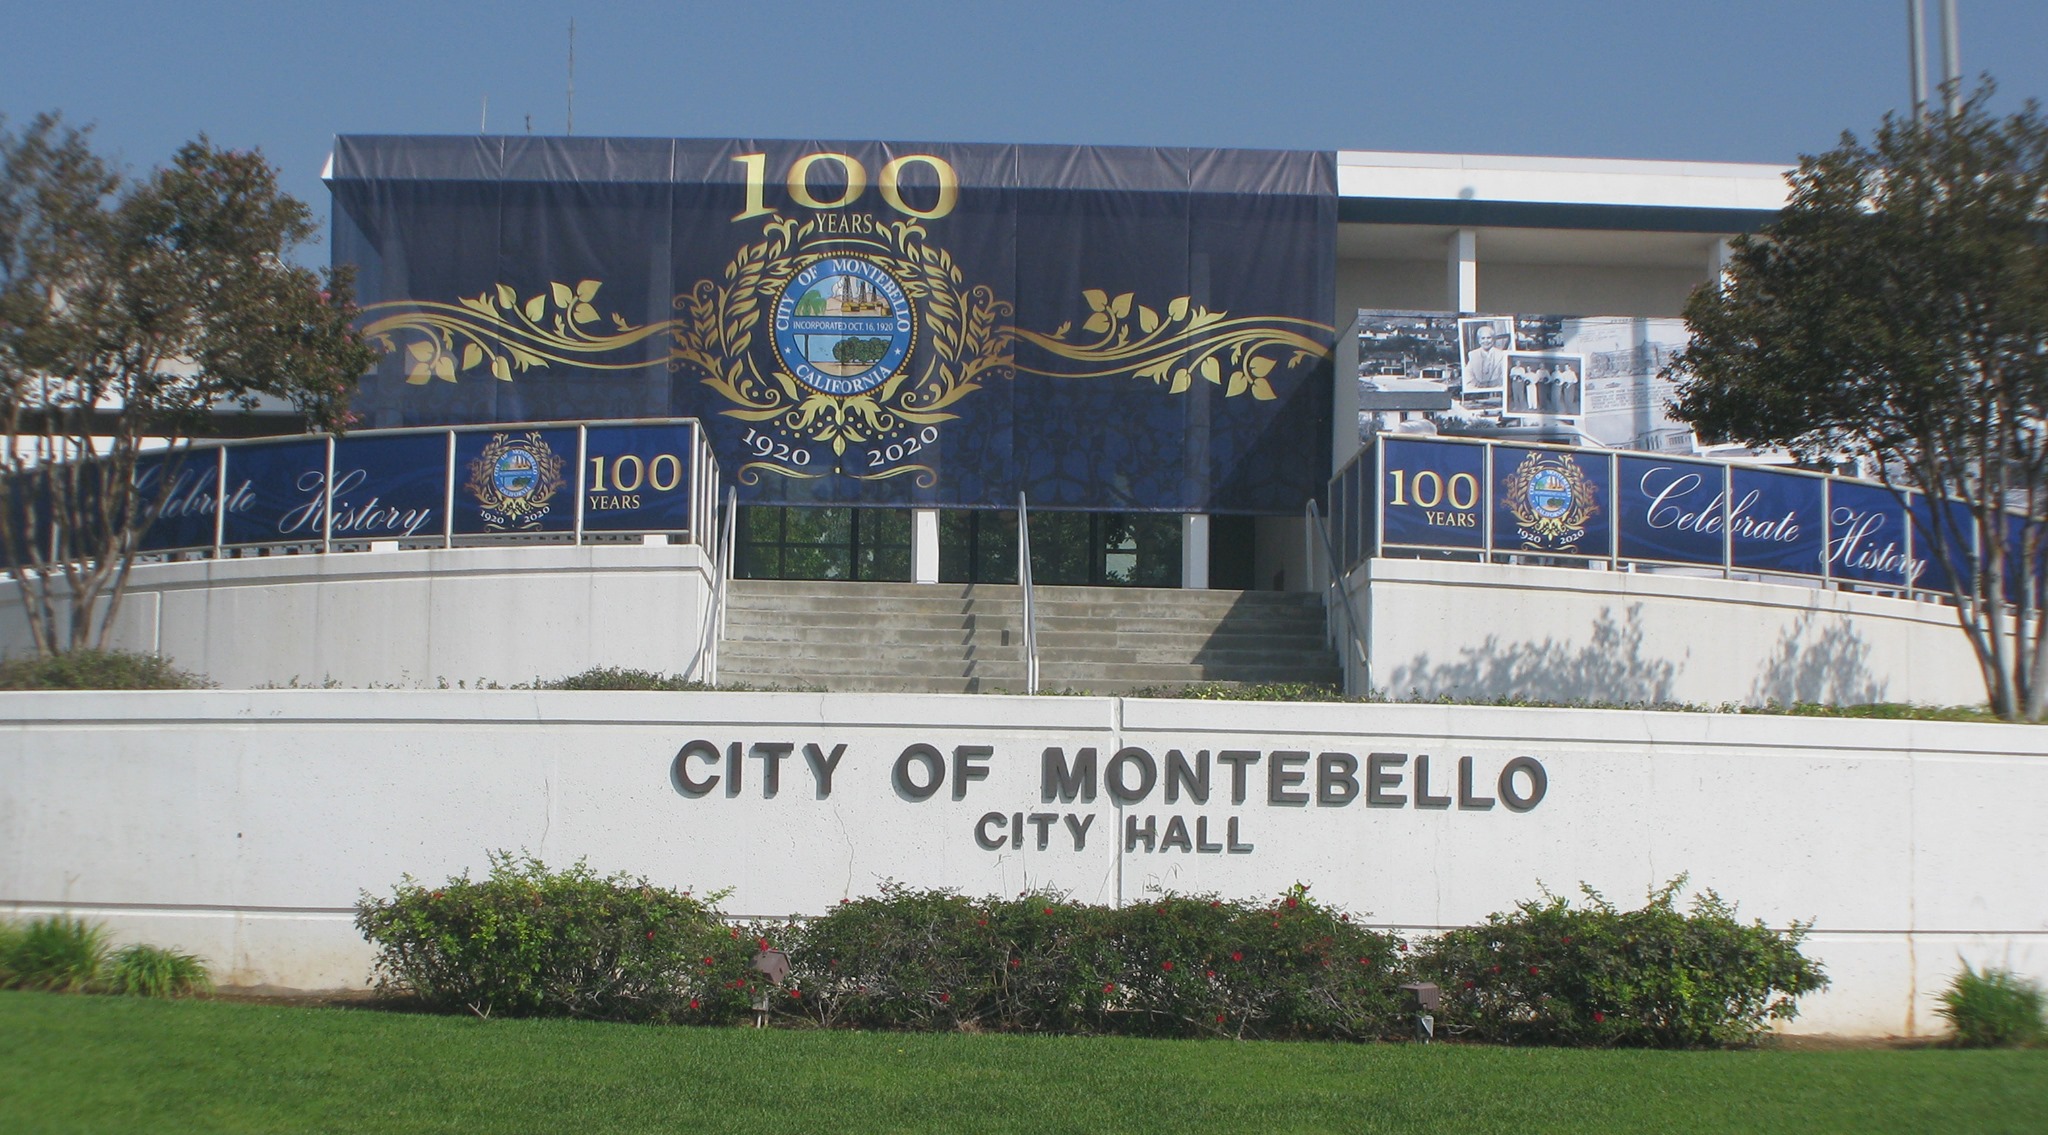 City of Montebello